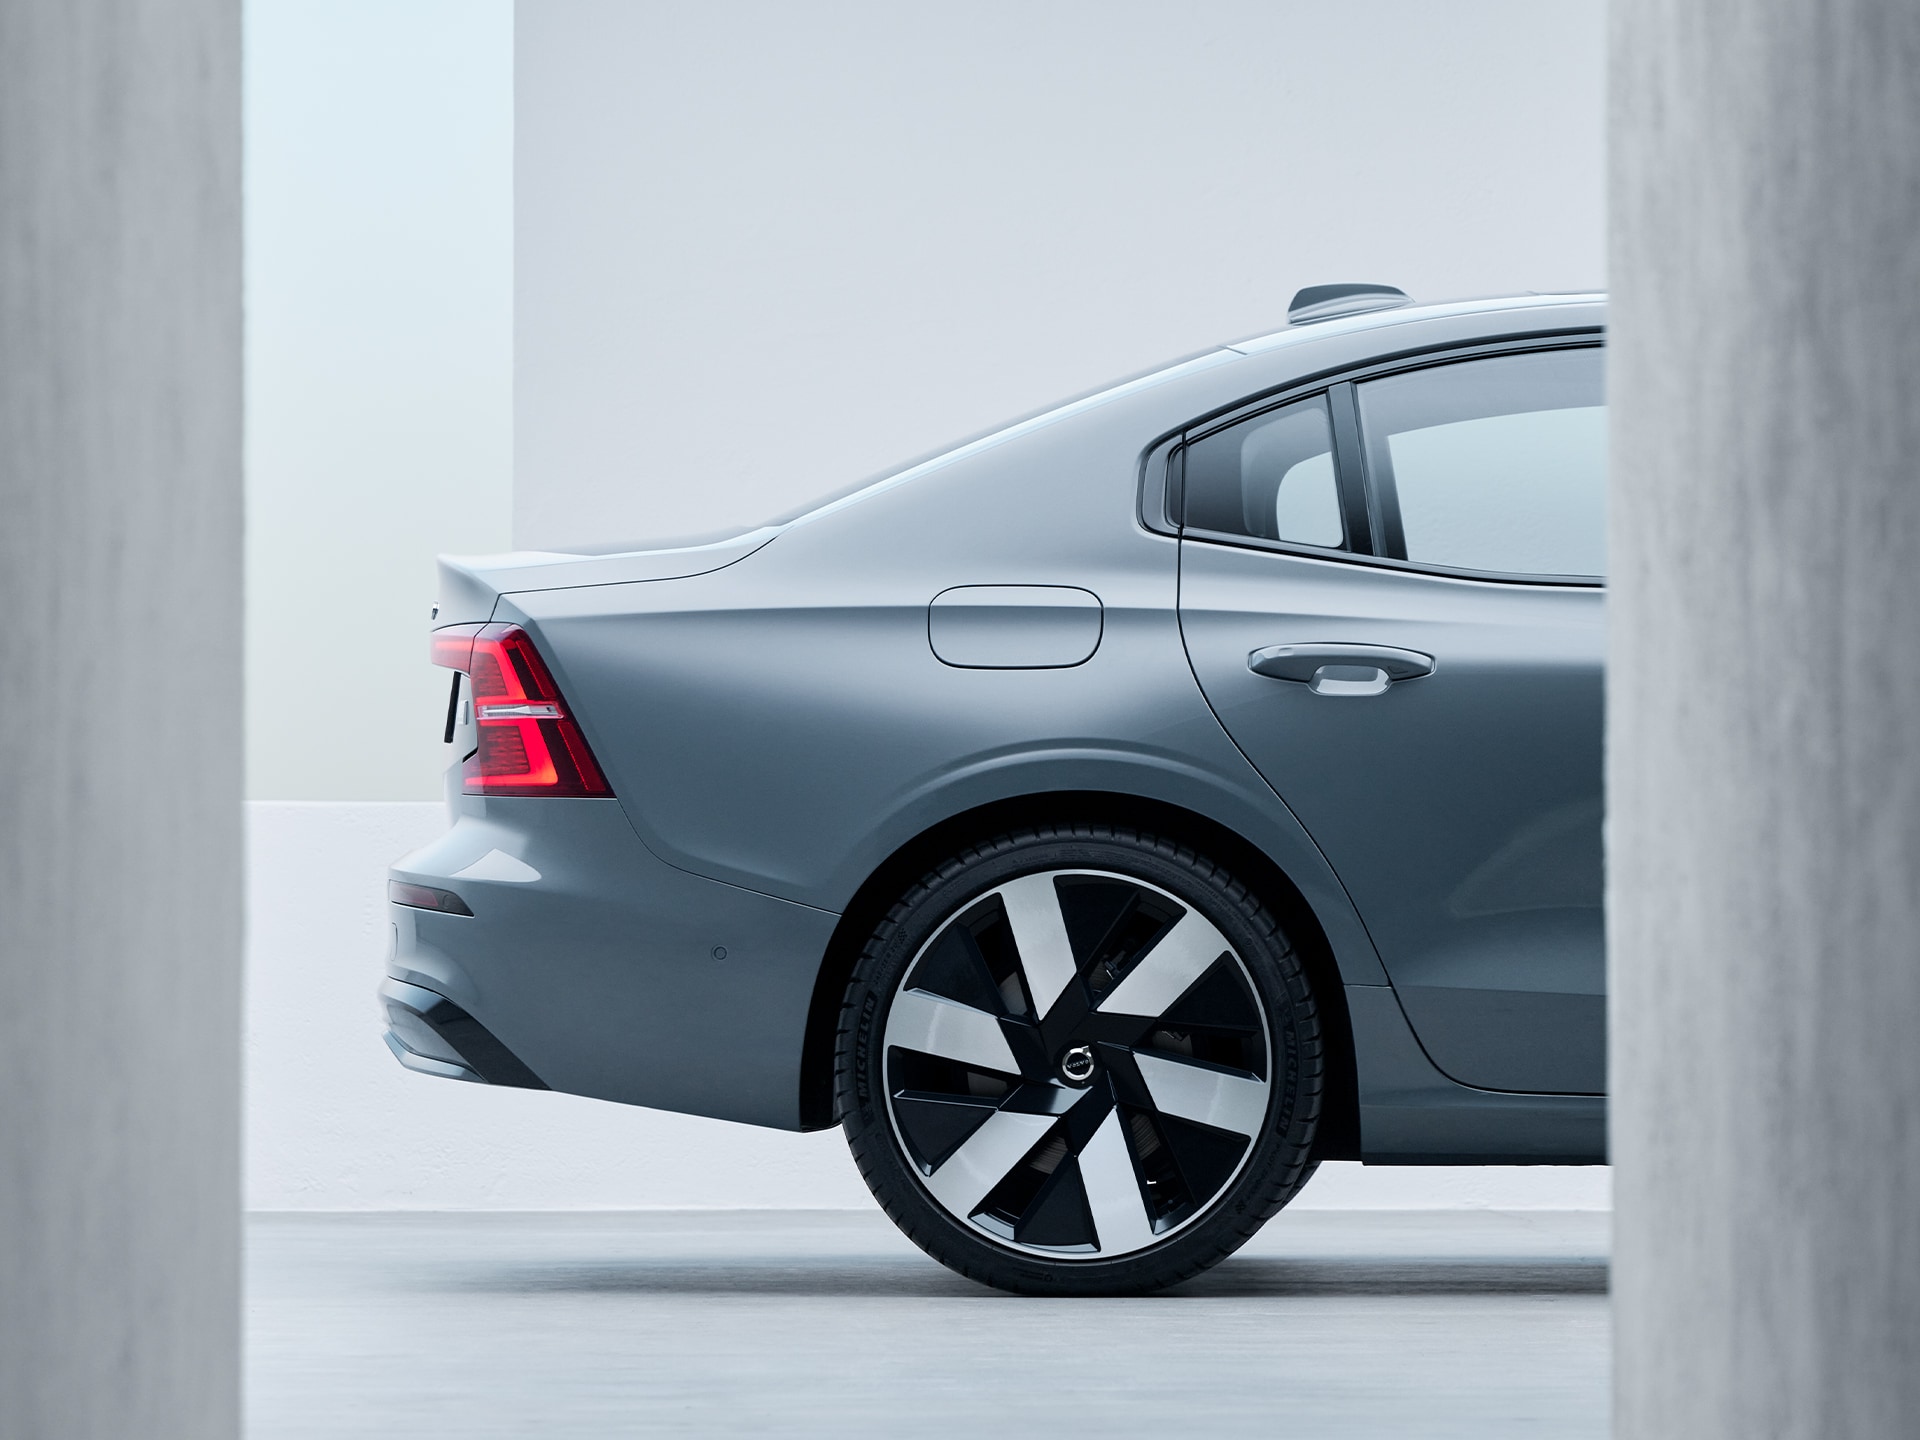 Η νέα αεροδυναμική σχεδίαση των τροχών στο Volvo S60 Recharge.